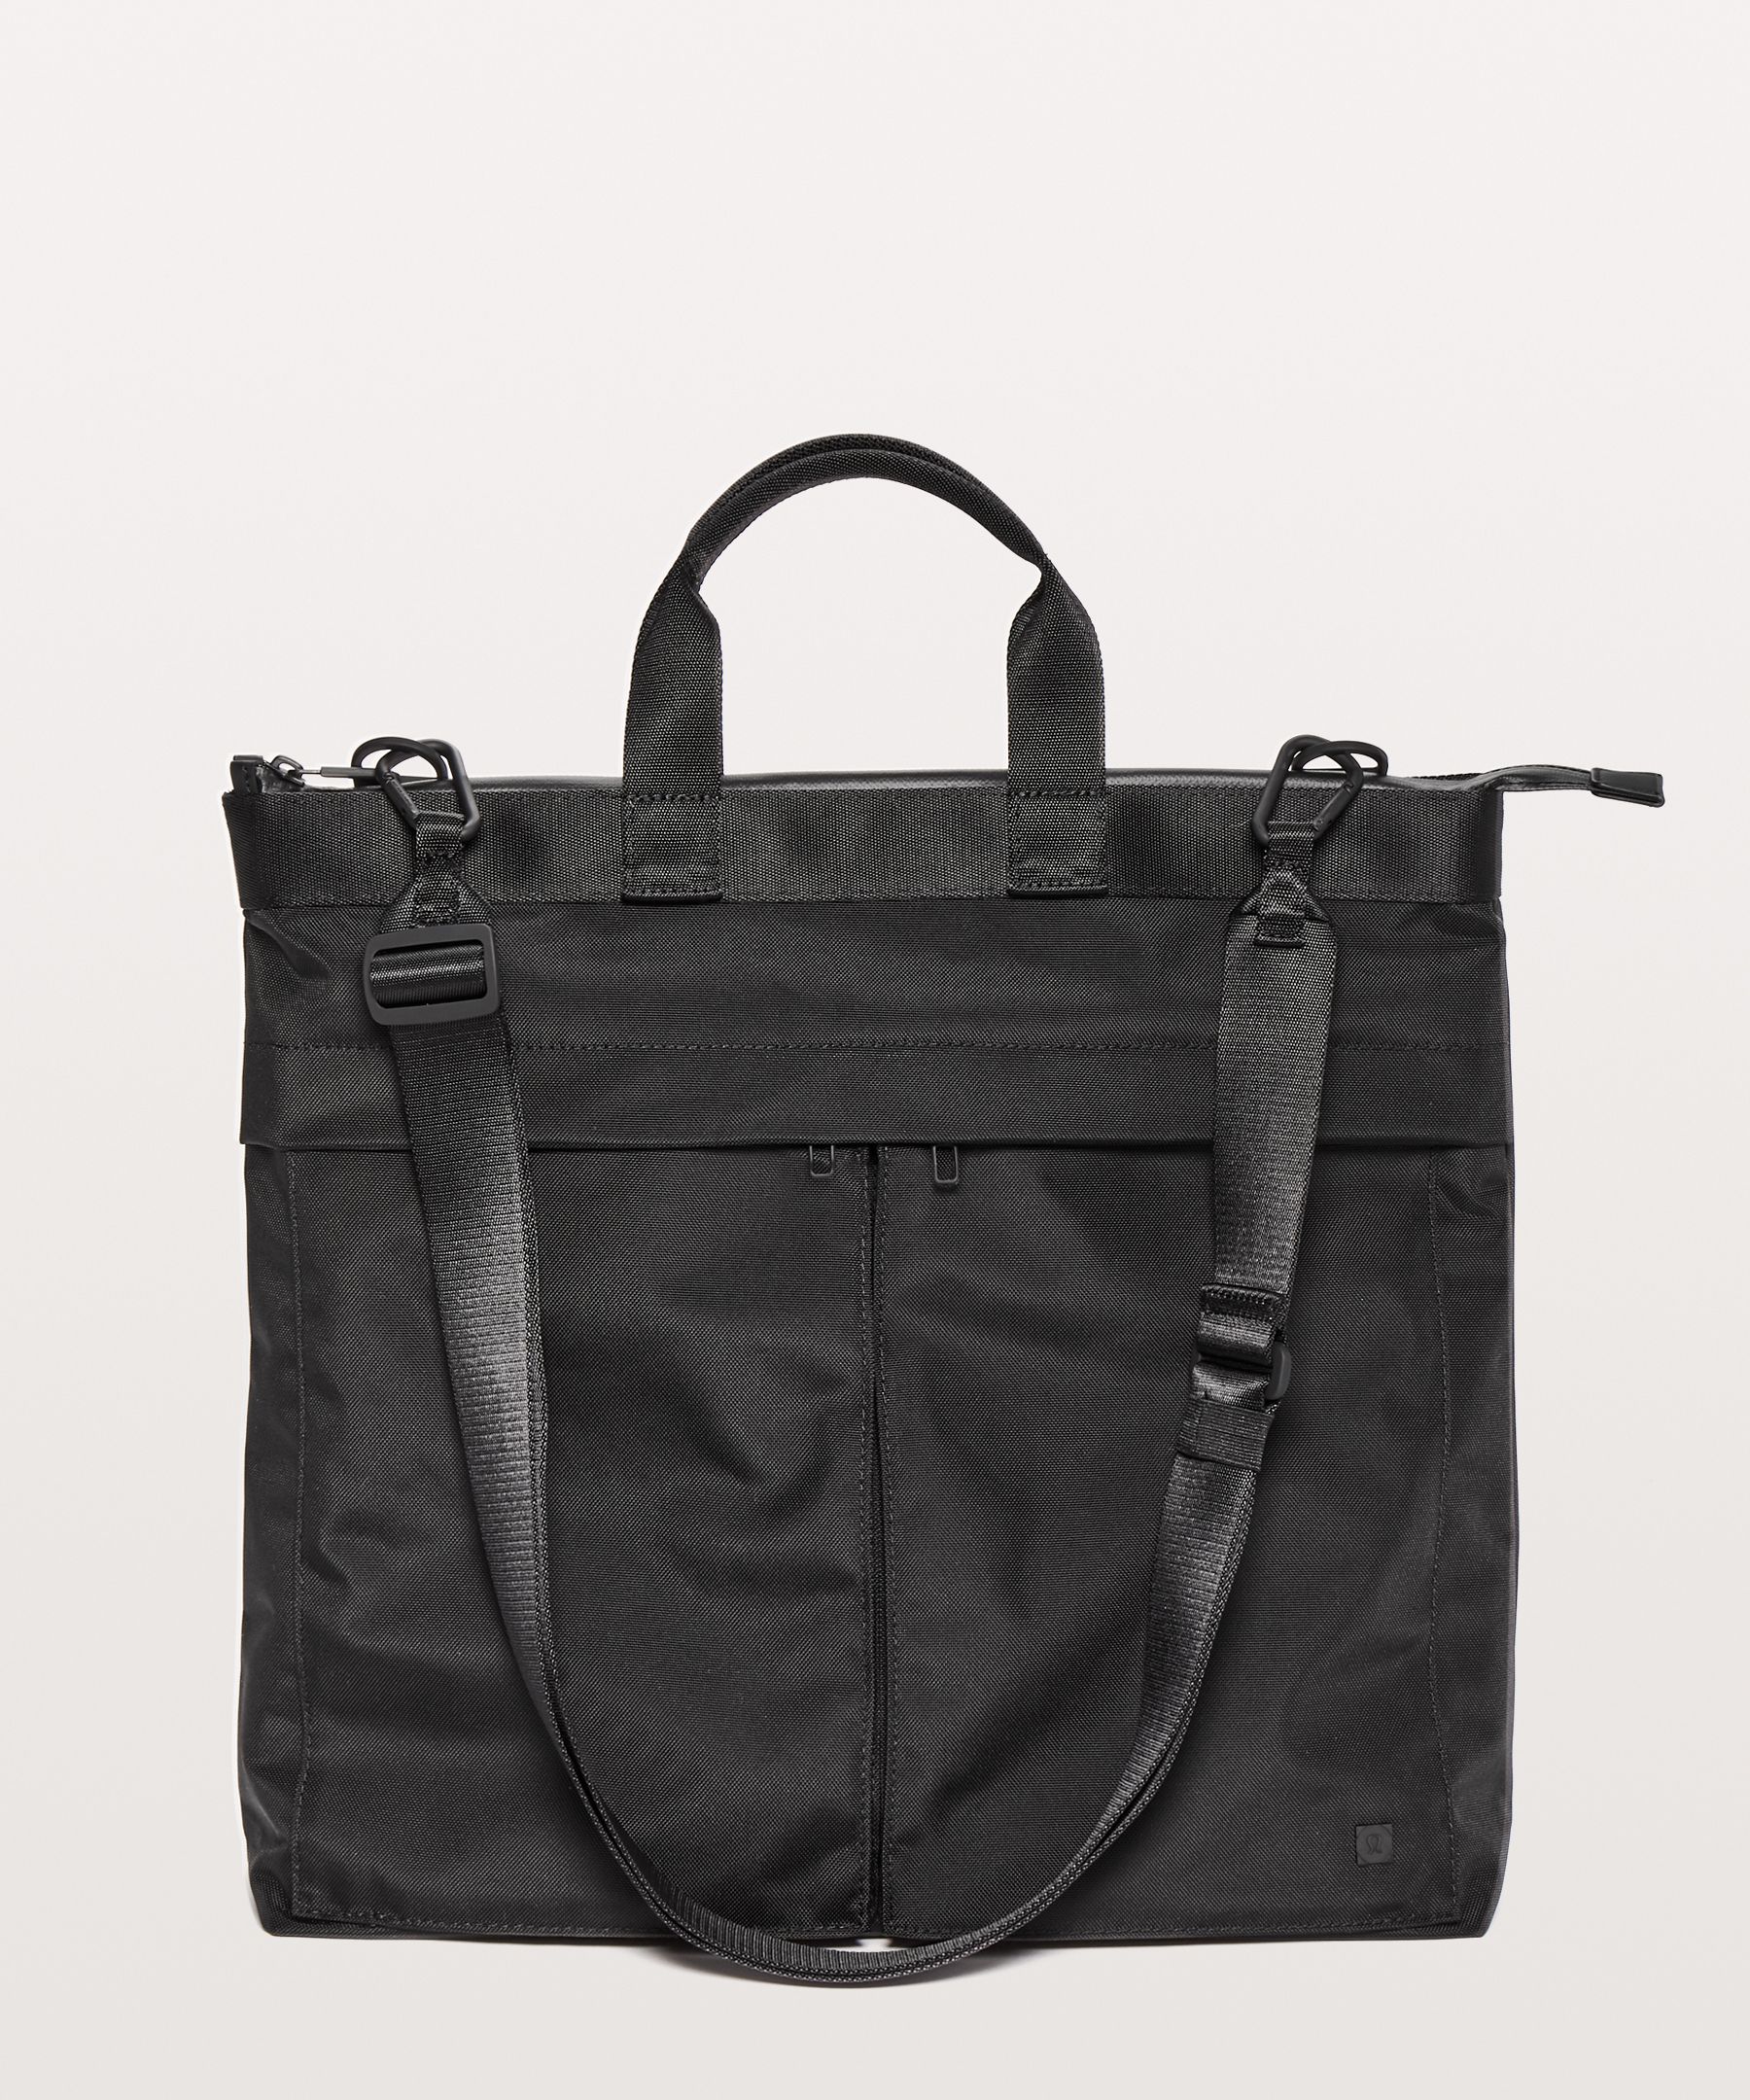 Lululemon Commission Bag In Black